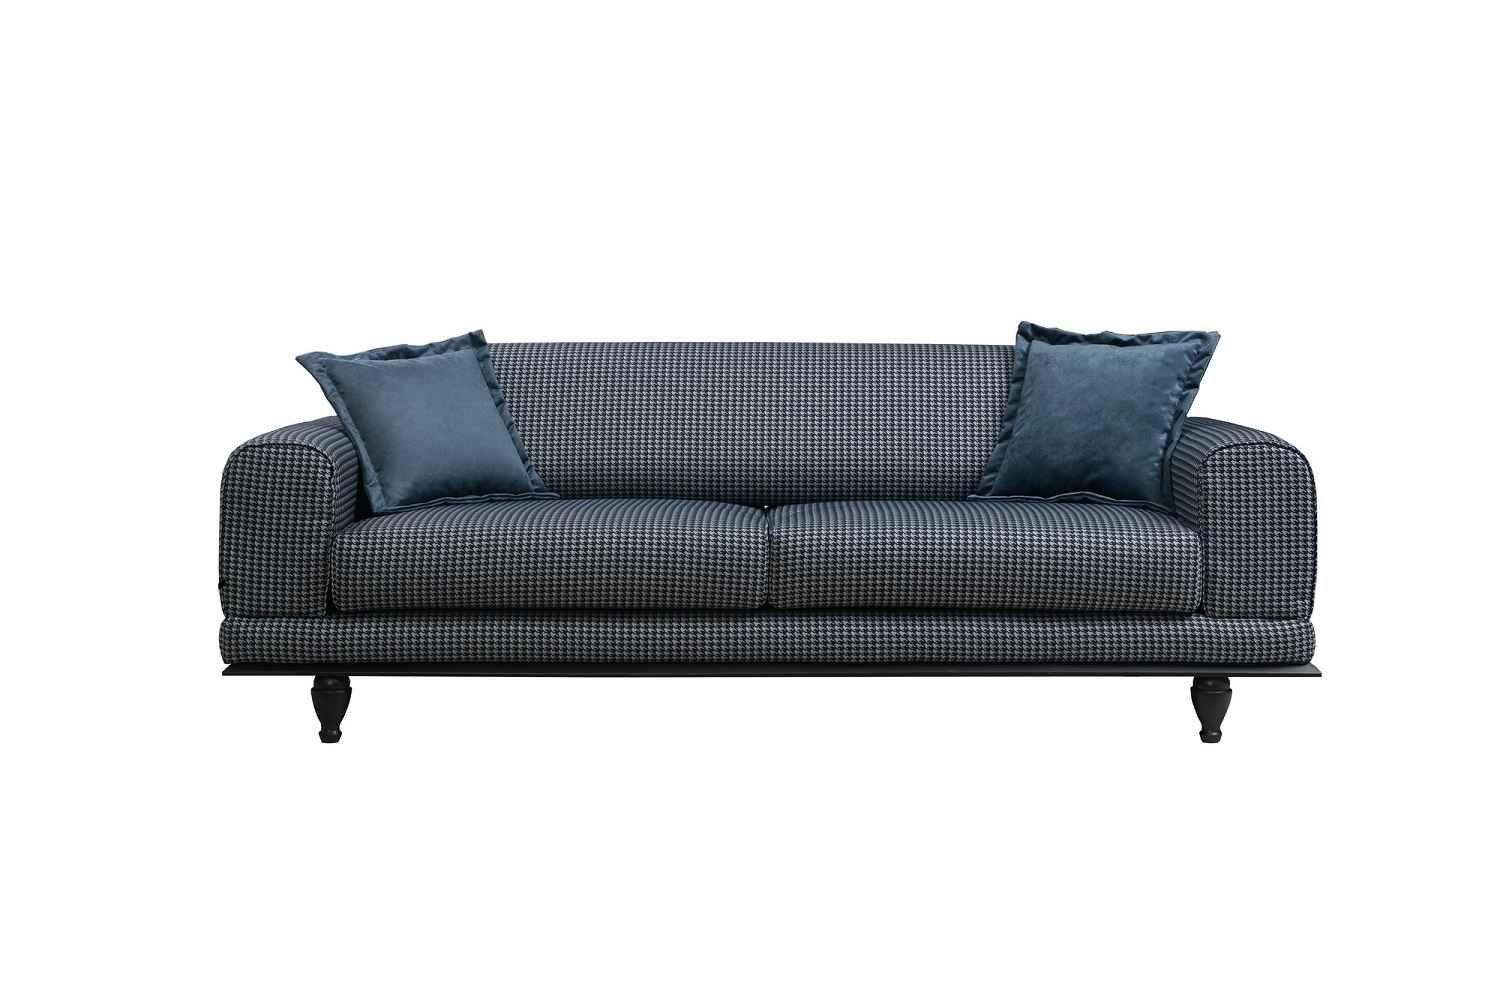 Sofahouse Designová rozkládací sedačka Rococo 220 cm tmavě modrá